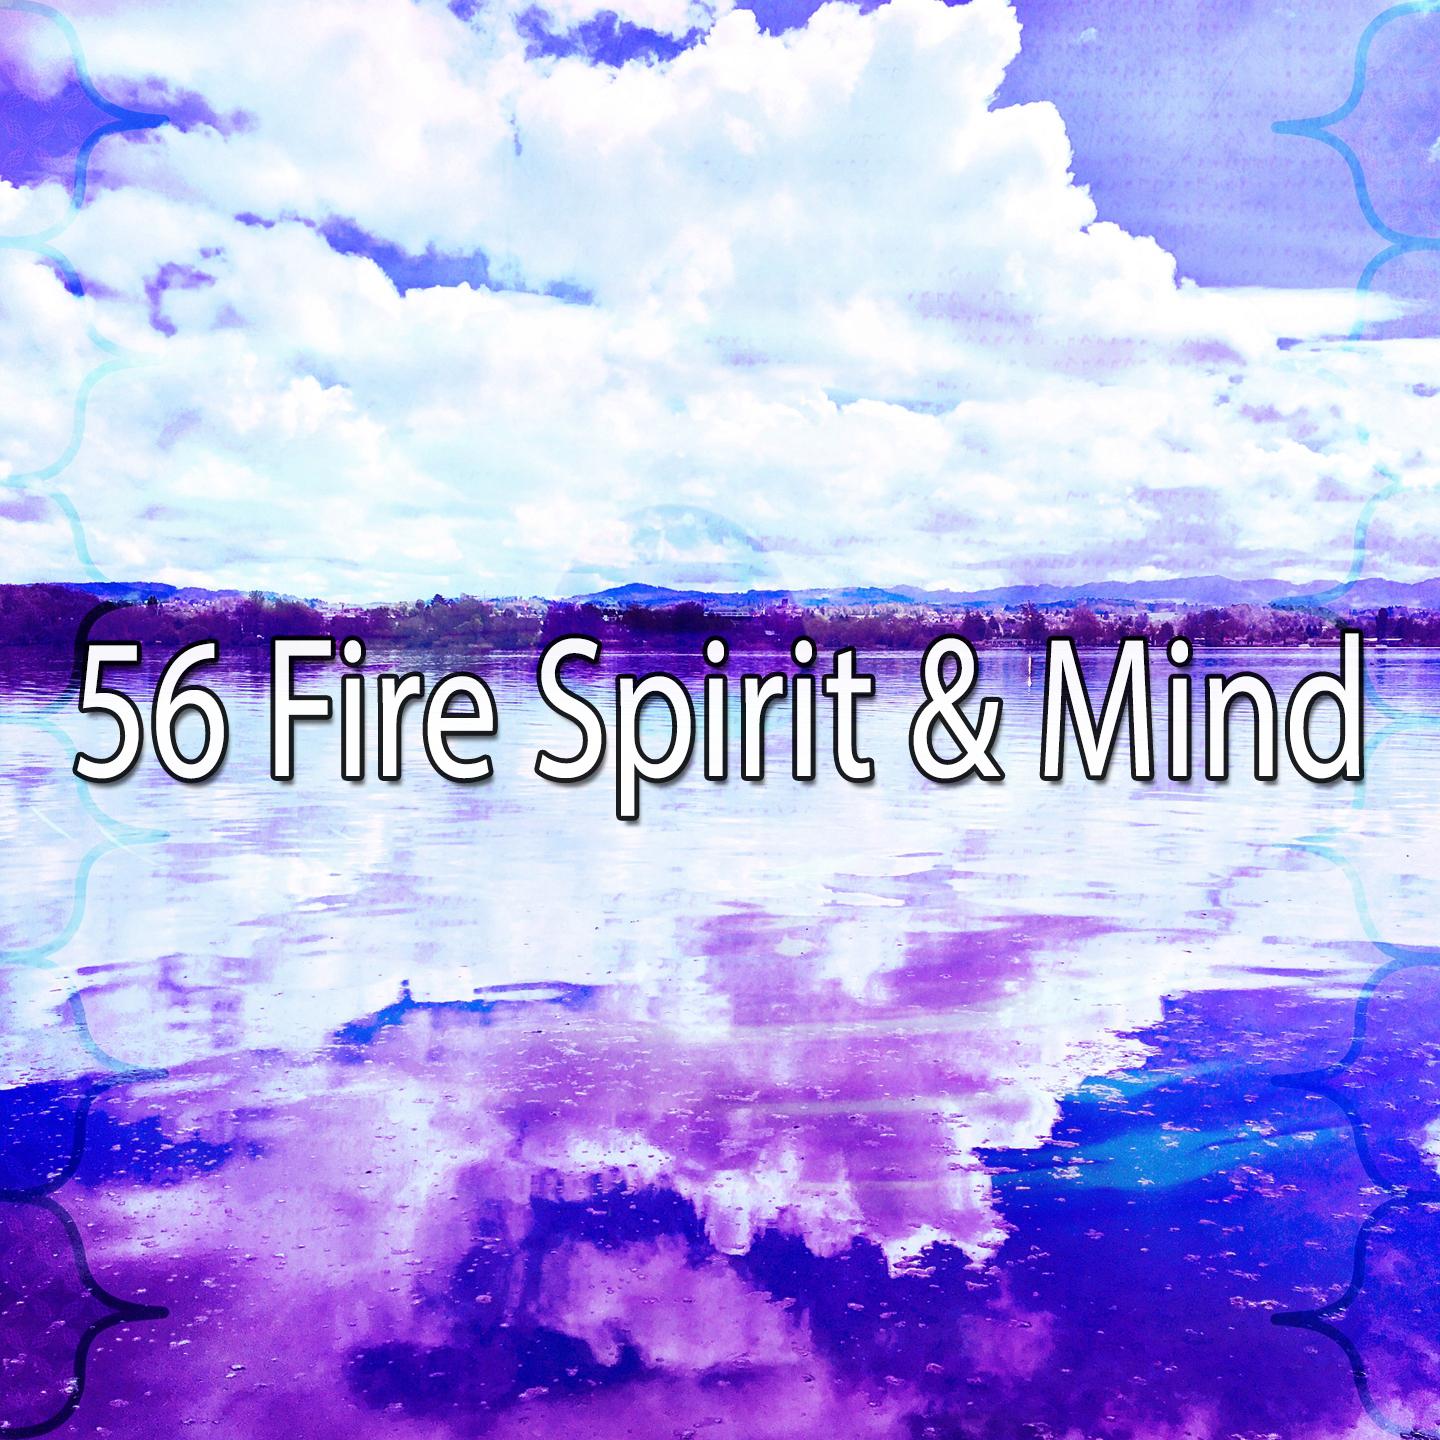 56 Fire Spirit & Mind